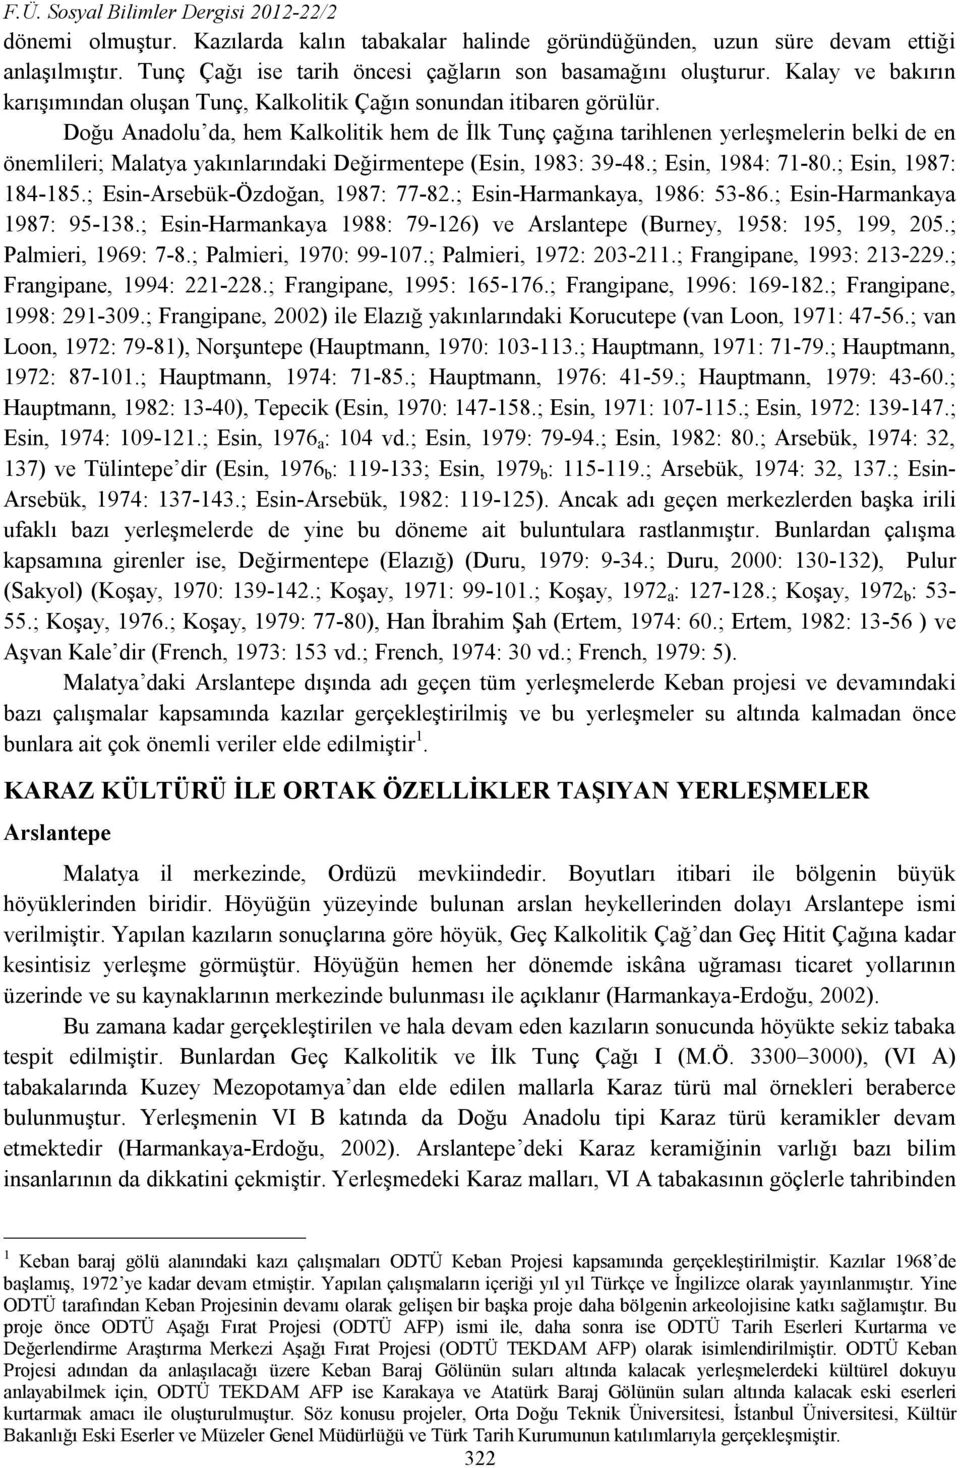 Doğu Anadolu da, hem Kalkolitik hem de İlk Tunç çağına tarihlenen yerleşmelerin belki de en önemlileri; Malatya yakınlarındaki Değirmentepe (Esin, 1983: 39-48.; Esin, 1984: 71-80.